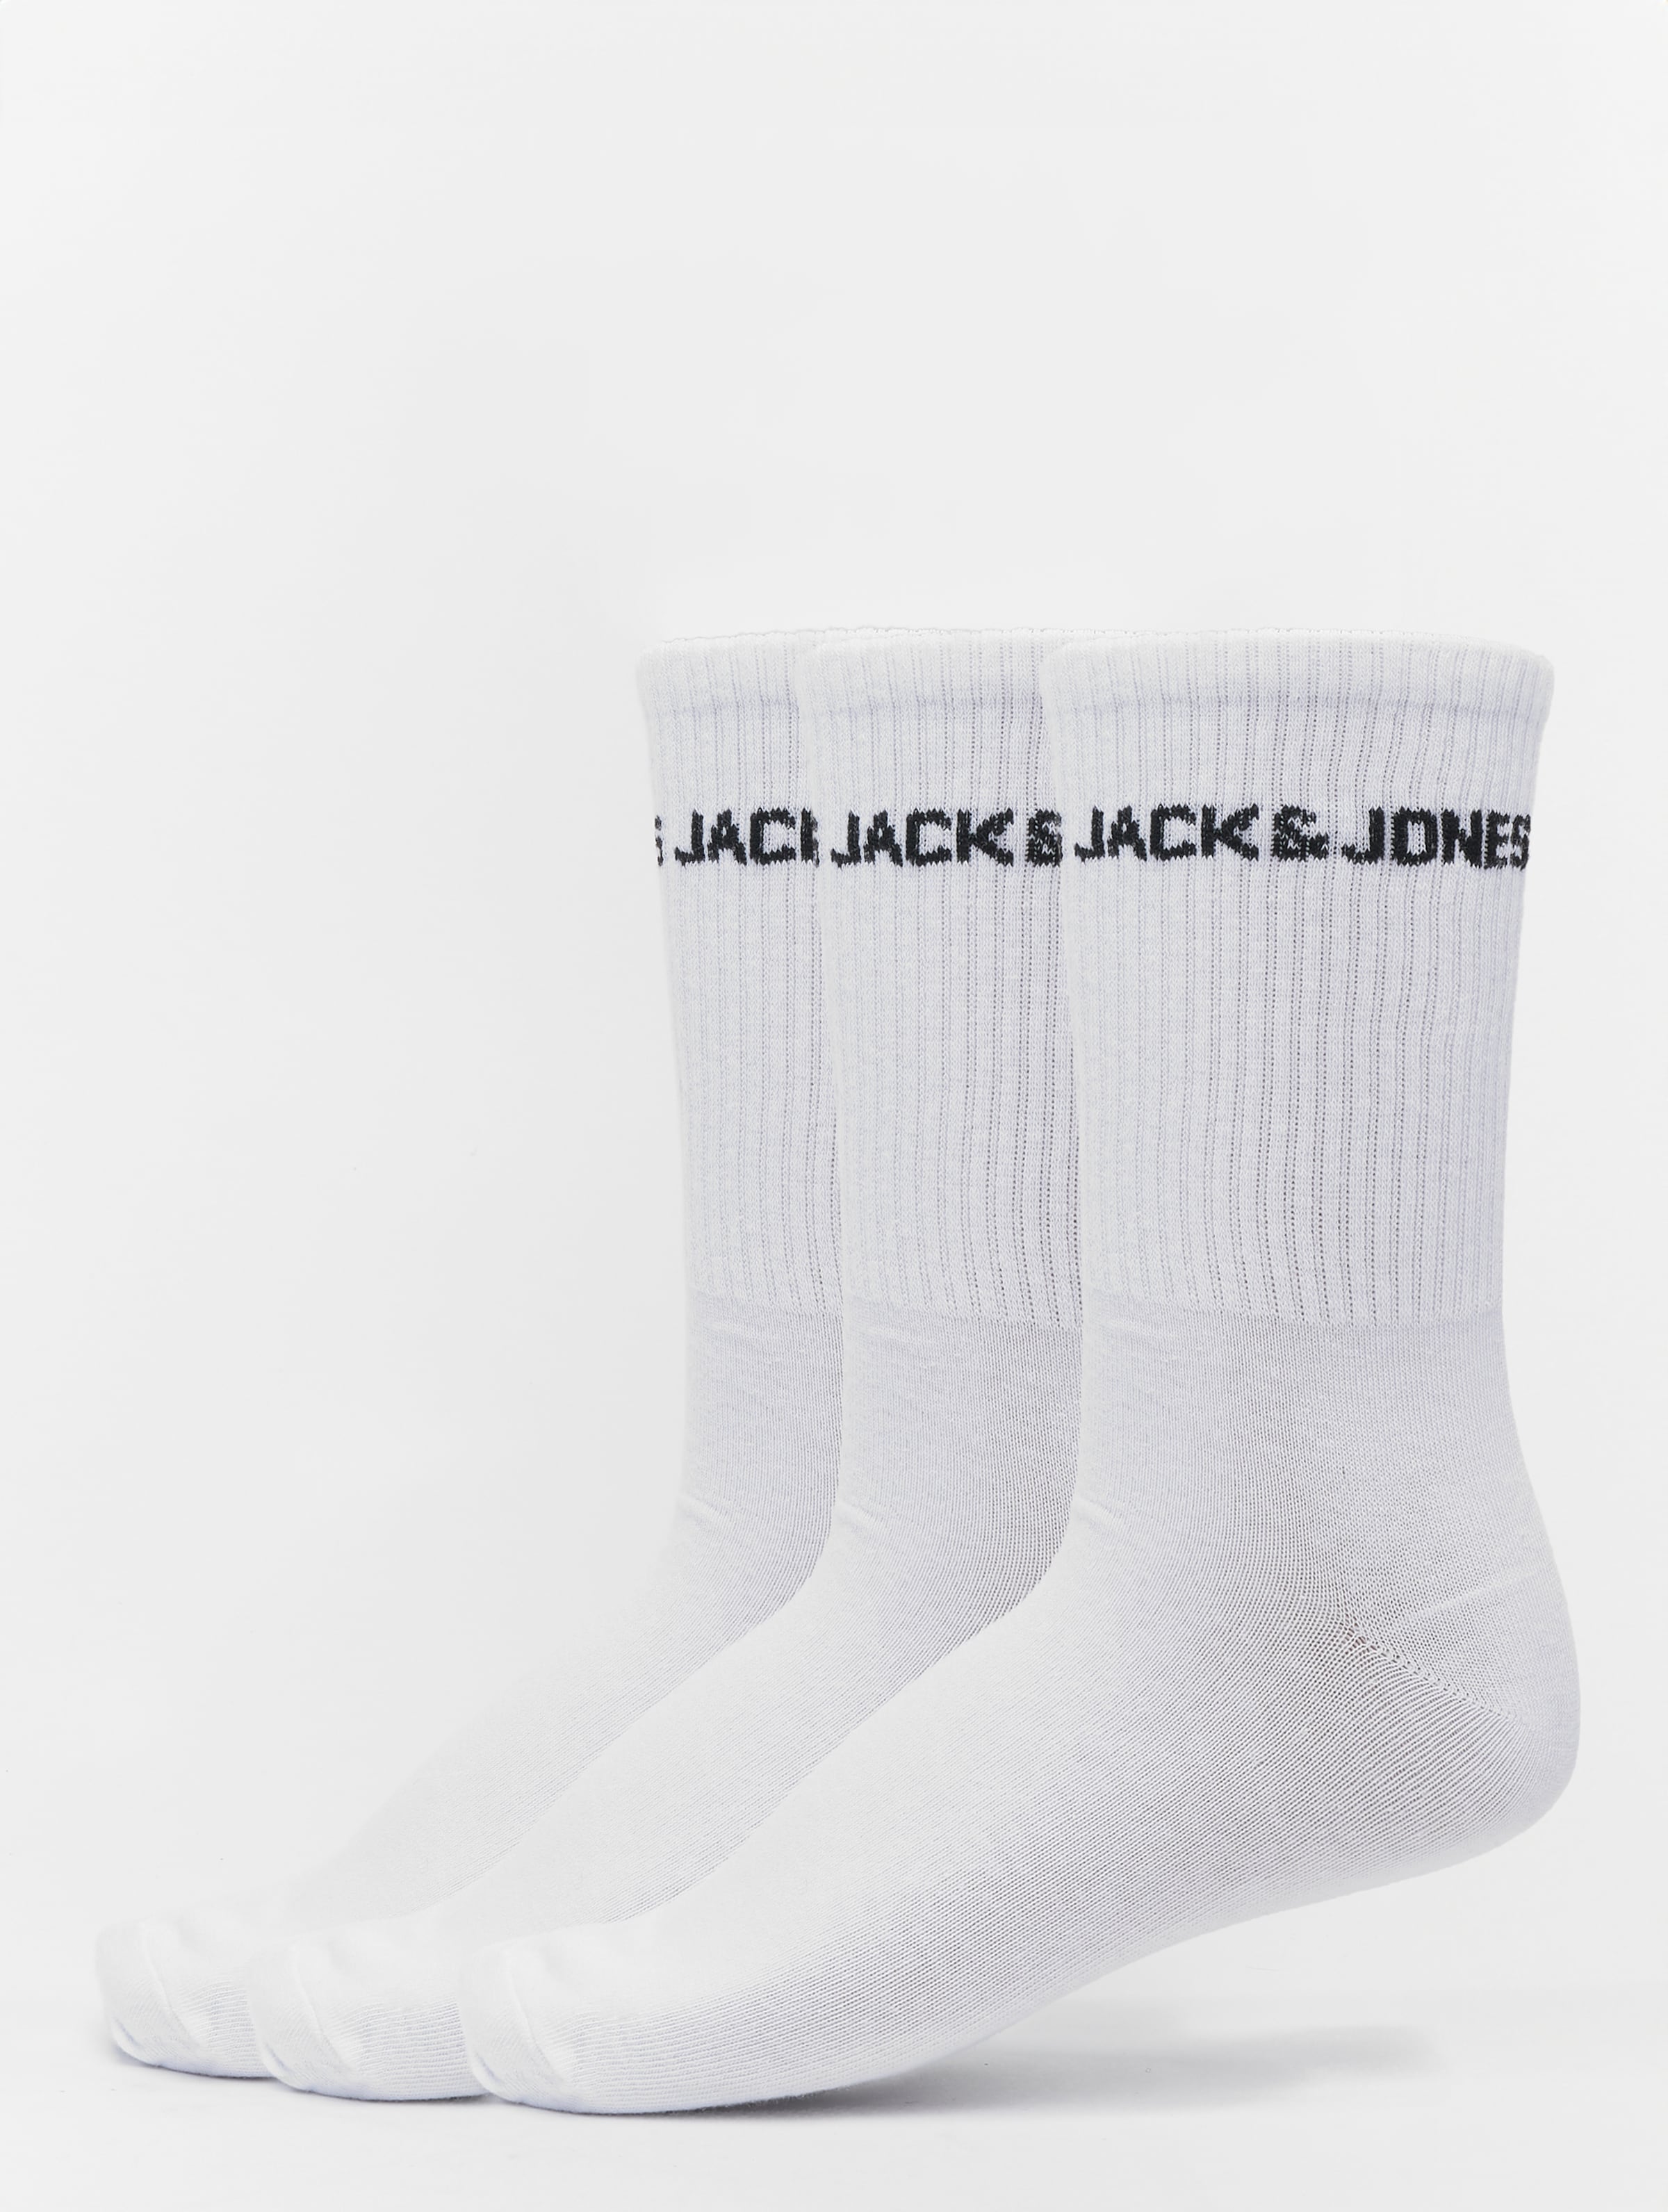 Jack & Jones 3P sokken melvin tennis wit - 40-46